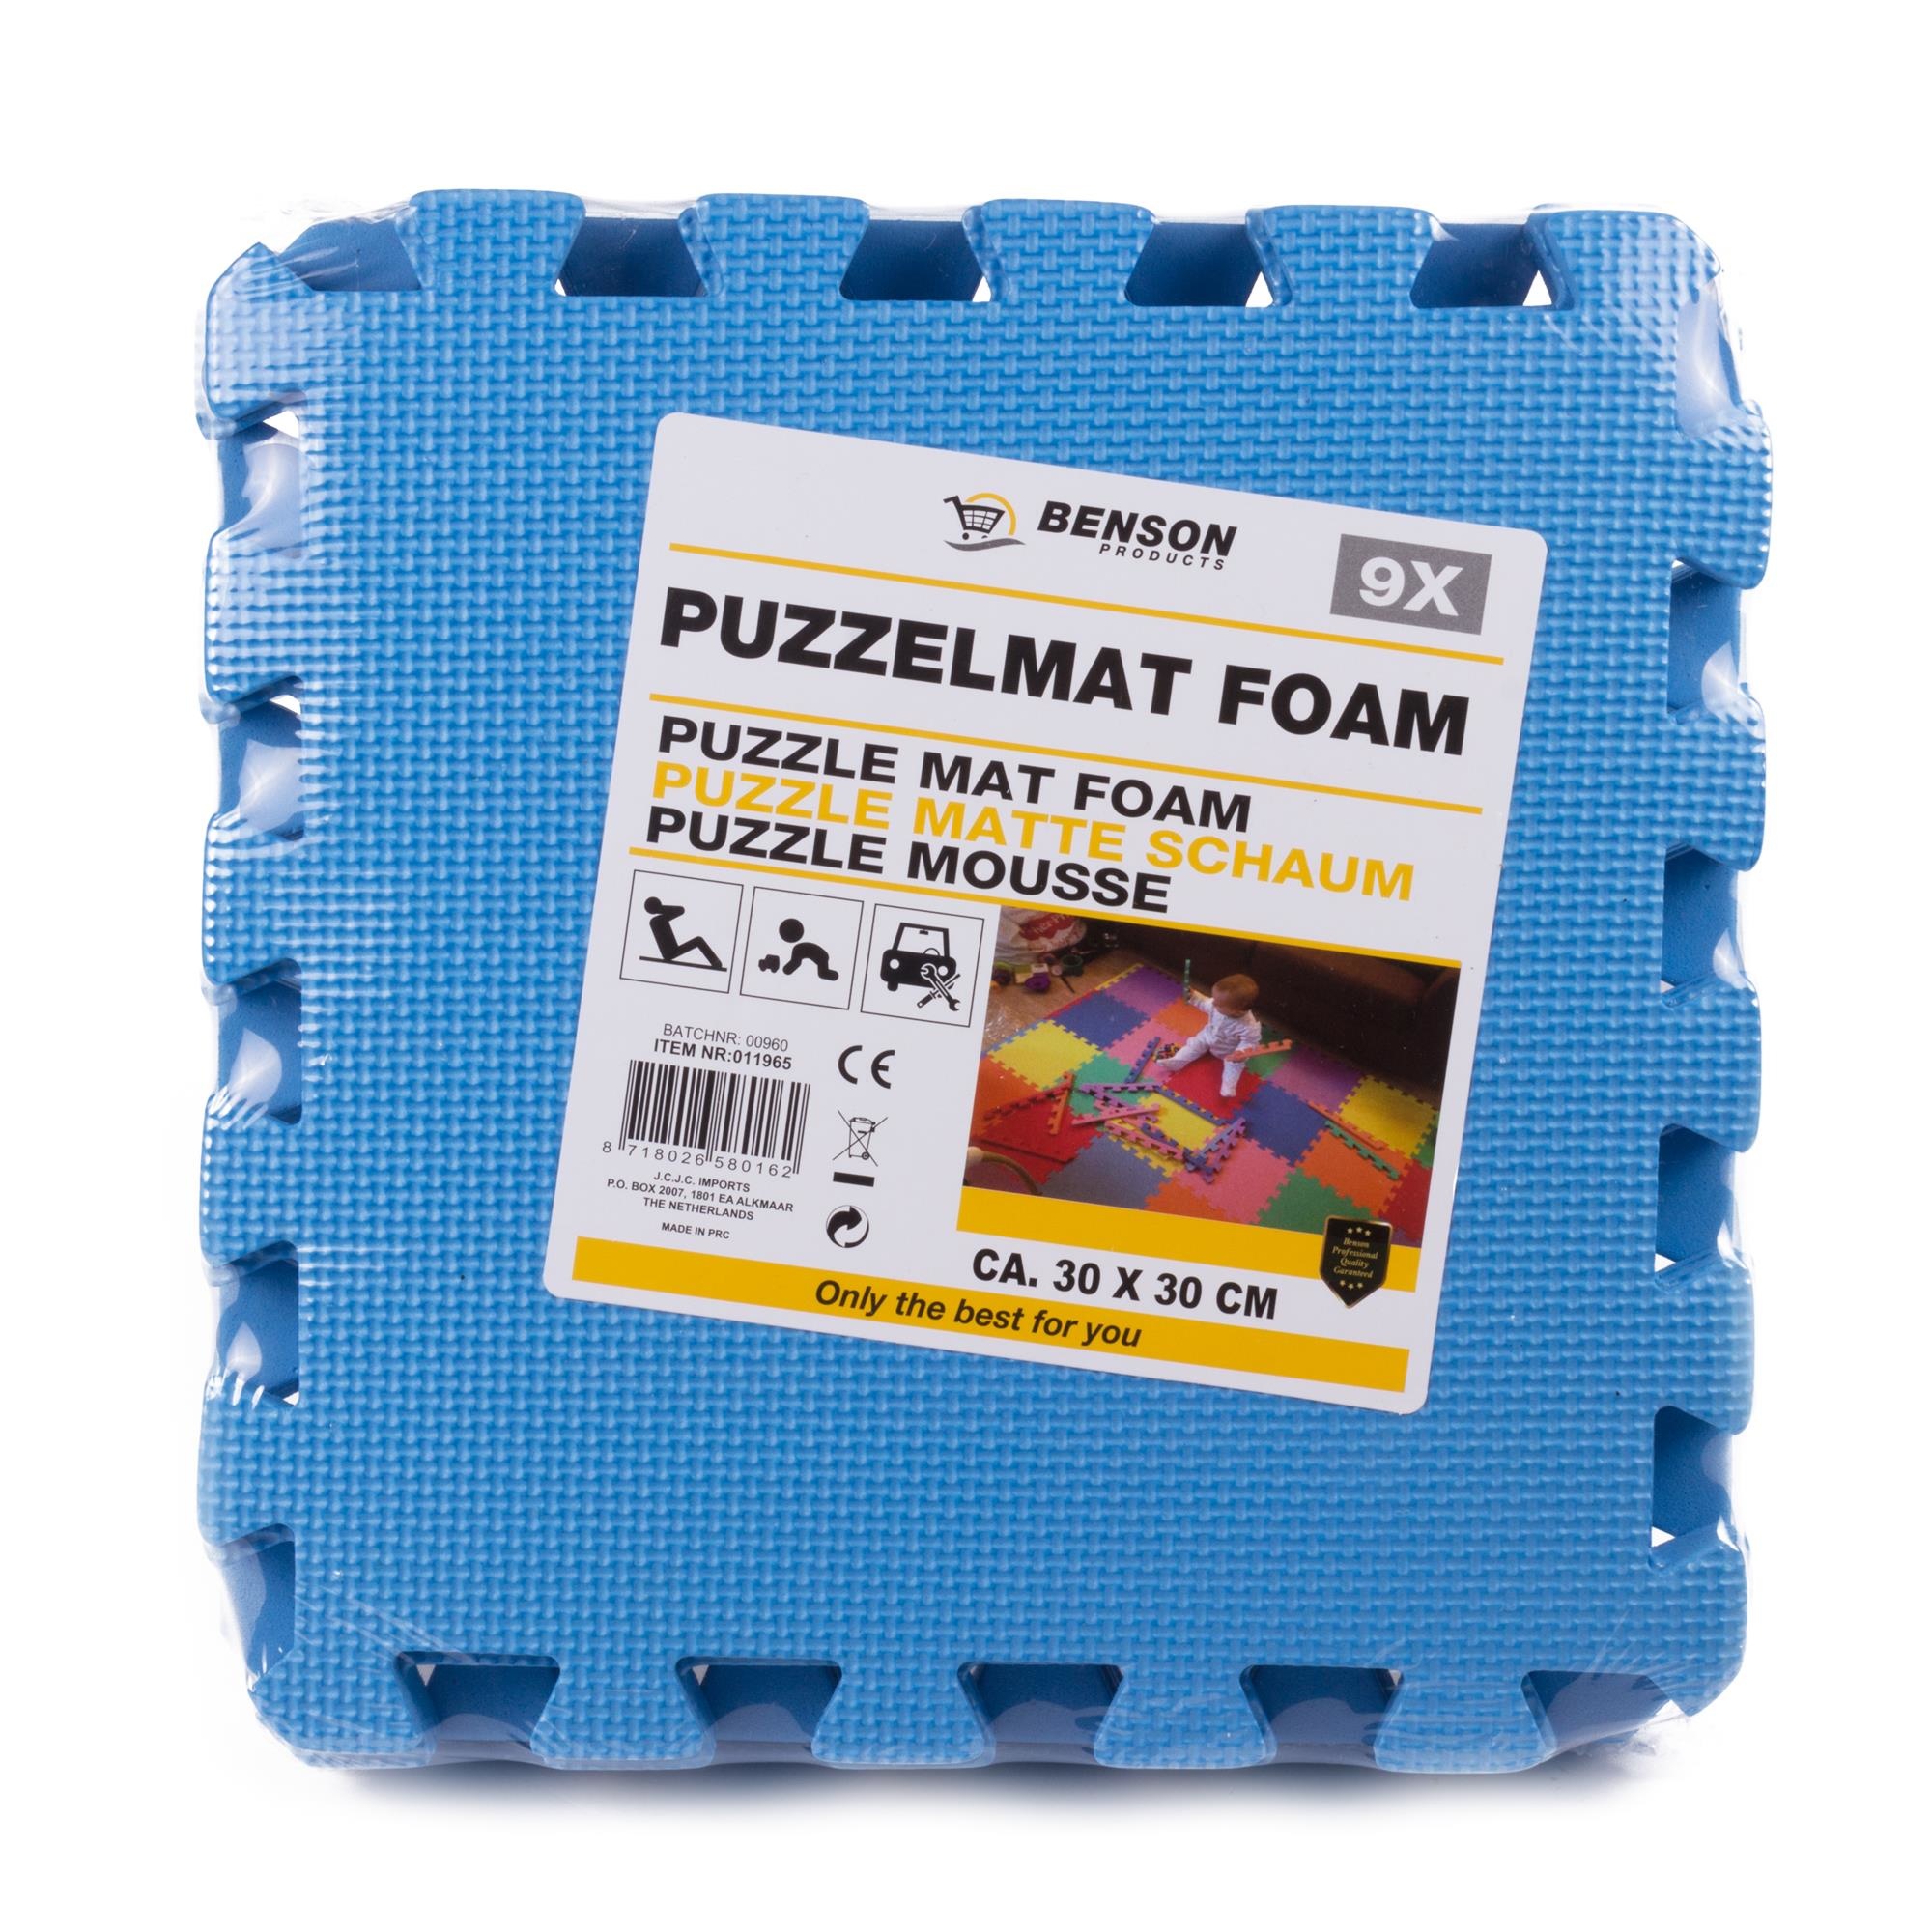 Verhuizer moeder kleinhandel Benson Blauwe Puzzel Vloertegels Foam 30 x 30cm - Puzzel Speelmat - 9 stuks  kopen? - 2Cheap